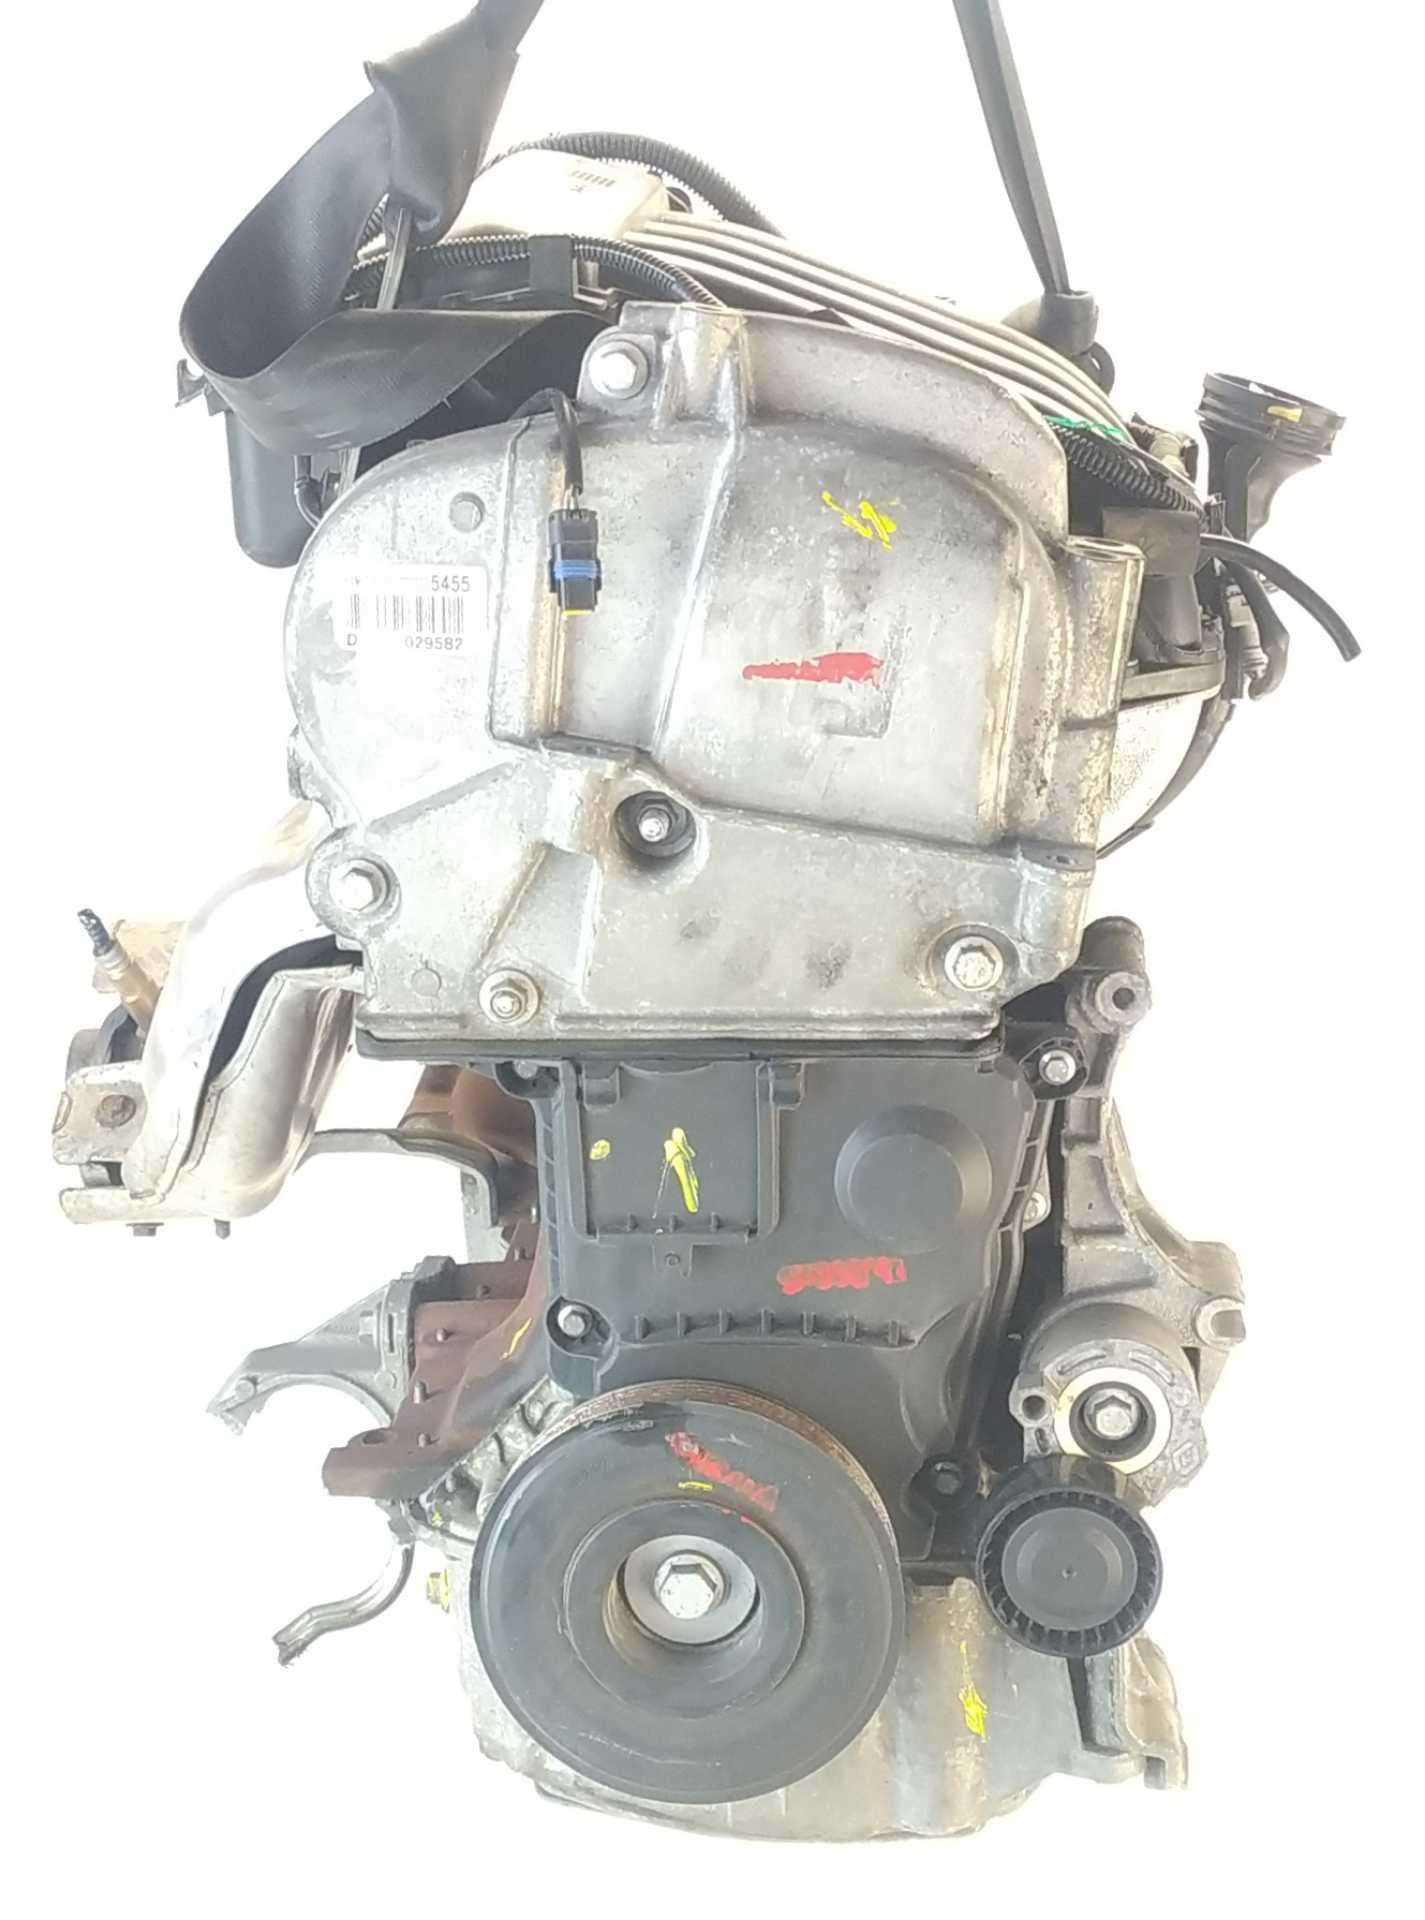 MOTOR RENAULT CLIO III 1.6 16V (BR05, BR0B, BR0Y, BR15, BR1J, BR1M, BR1Y, CR0B,... (82 KW / 112 CV) (06.2005 - ...)